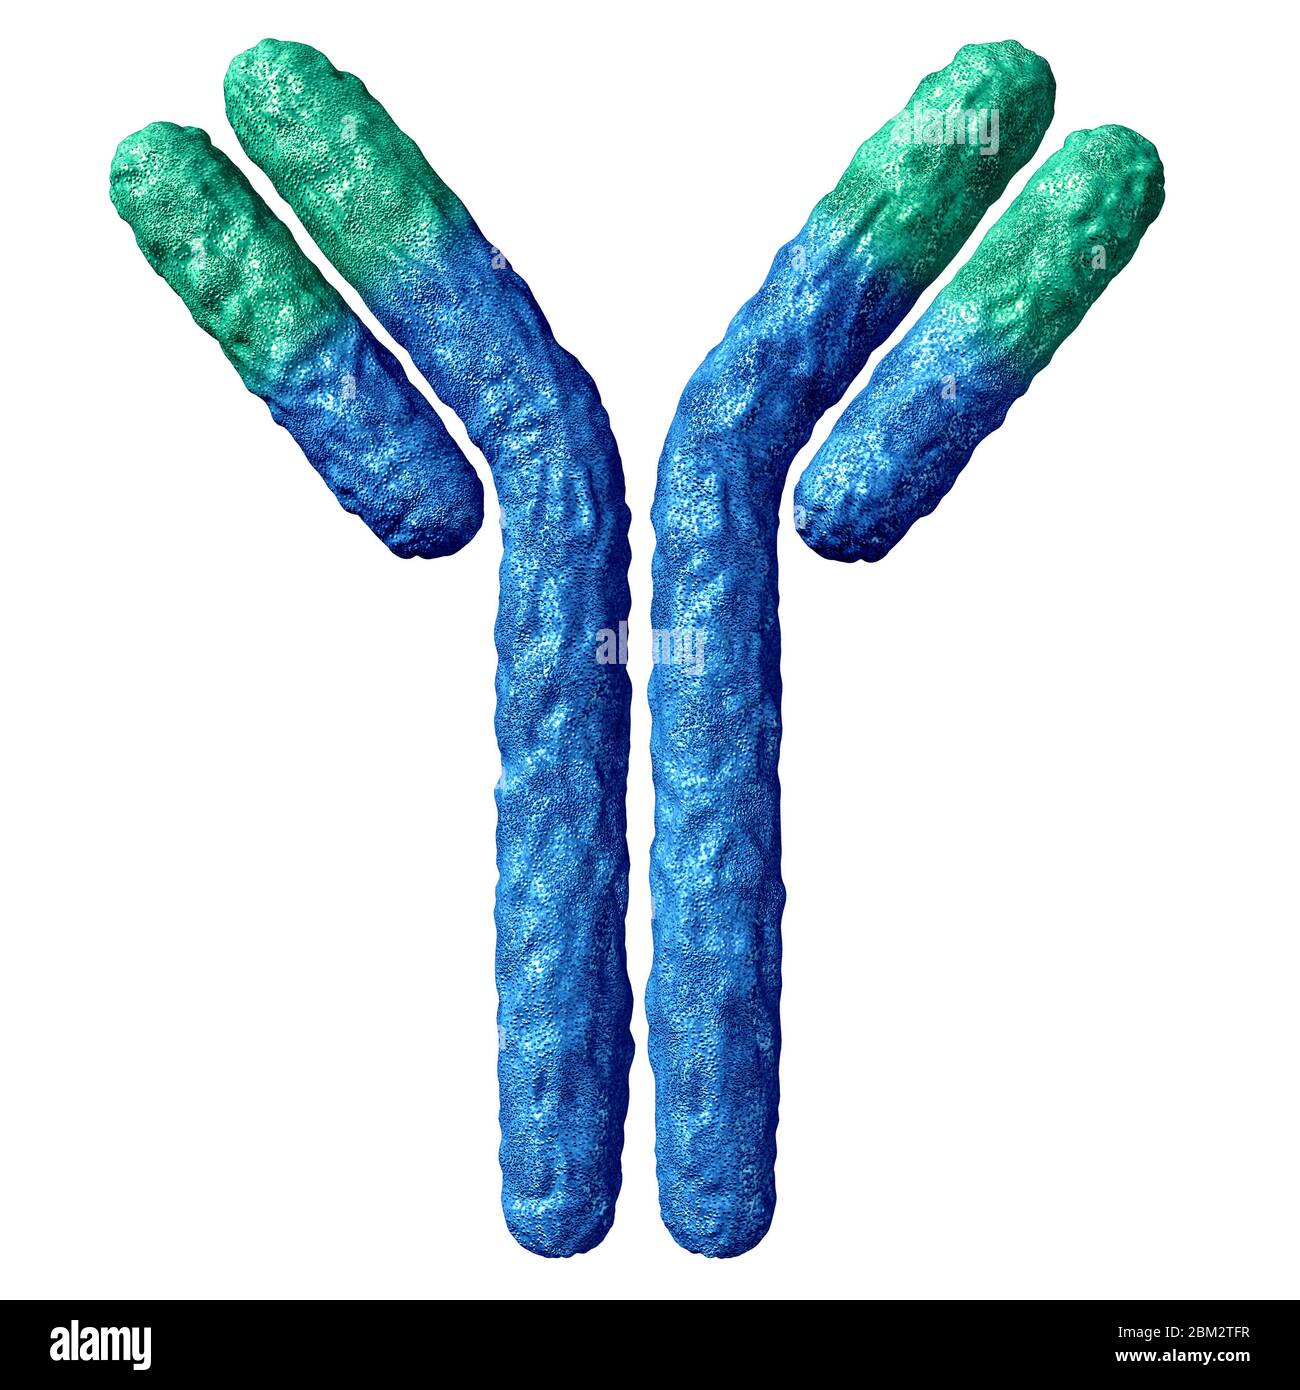 Antikörper-Anatomie auf weißem Hintergrund isoliert und Immunglobulin mit Disulfidbindung als Y-förmige Proteinas Teil des Immunsystems. Stockfoto